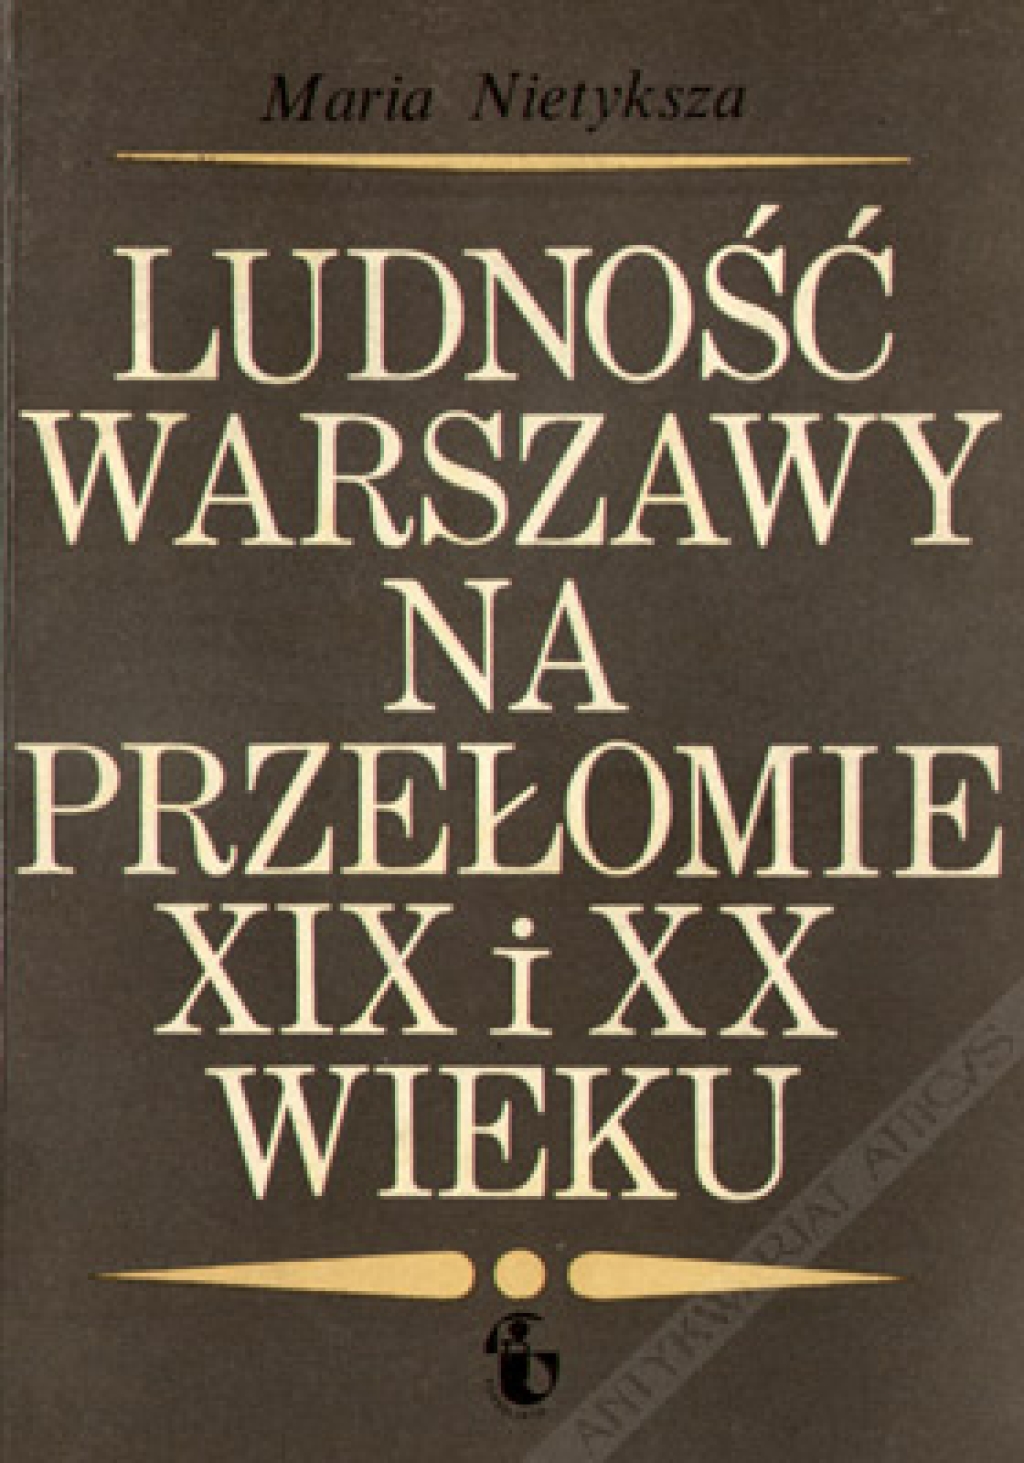 Ludność Warszawy na przełomie XIX i XX wieku